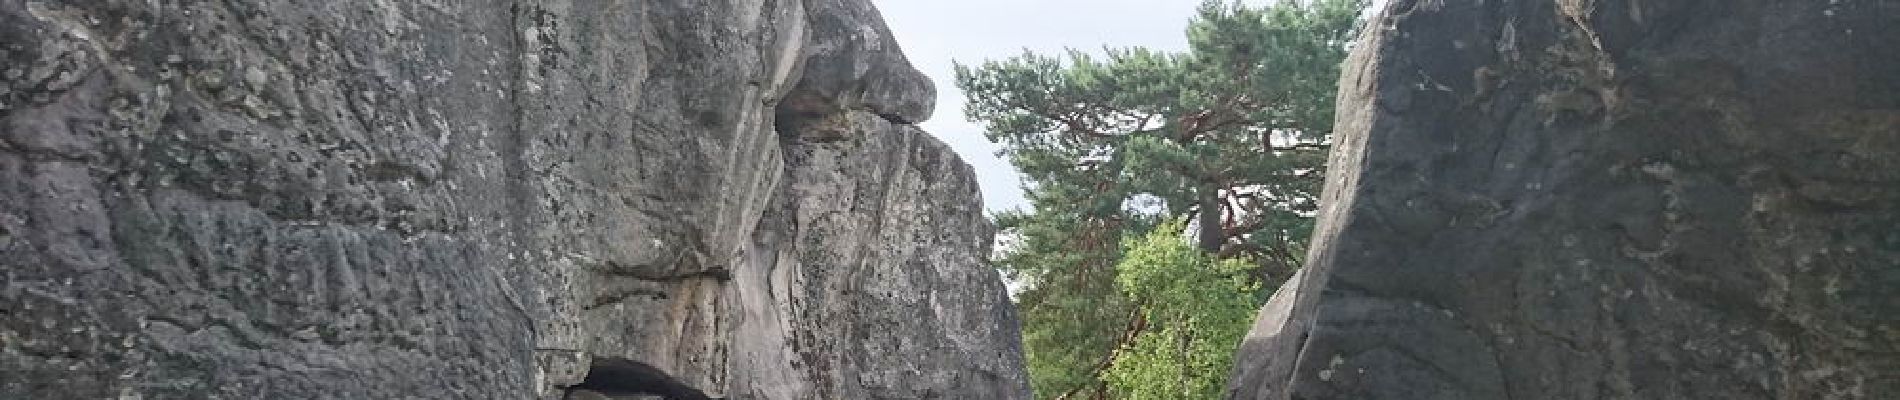 Point d'intérêt Fontainebleau - 02 - Le Rocher de Rude (S) - Photo